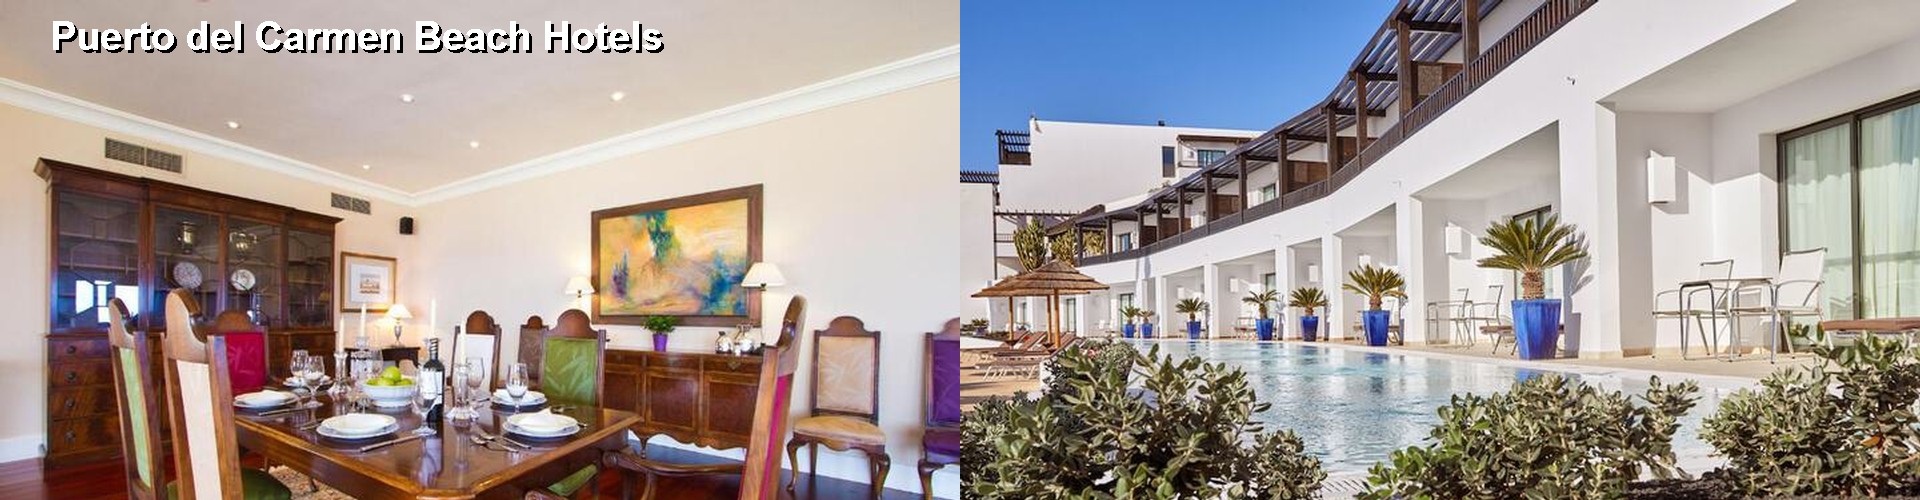 5 Best Hotels near Puerto del Carmen Beach